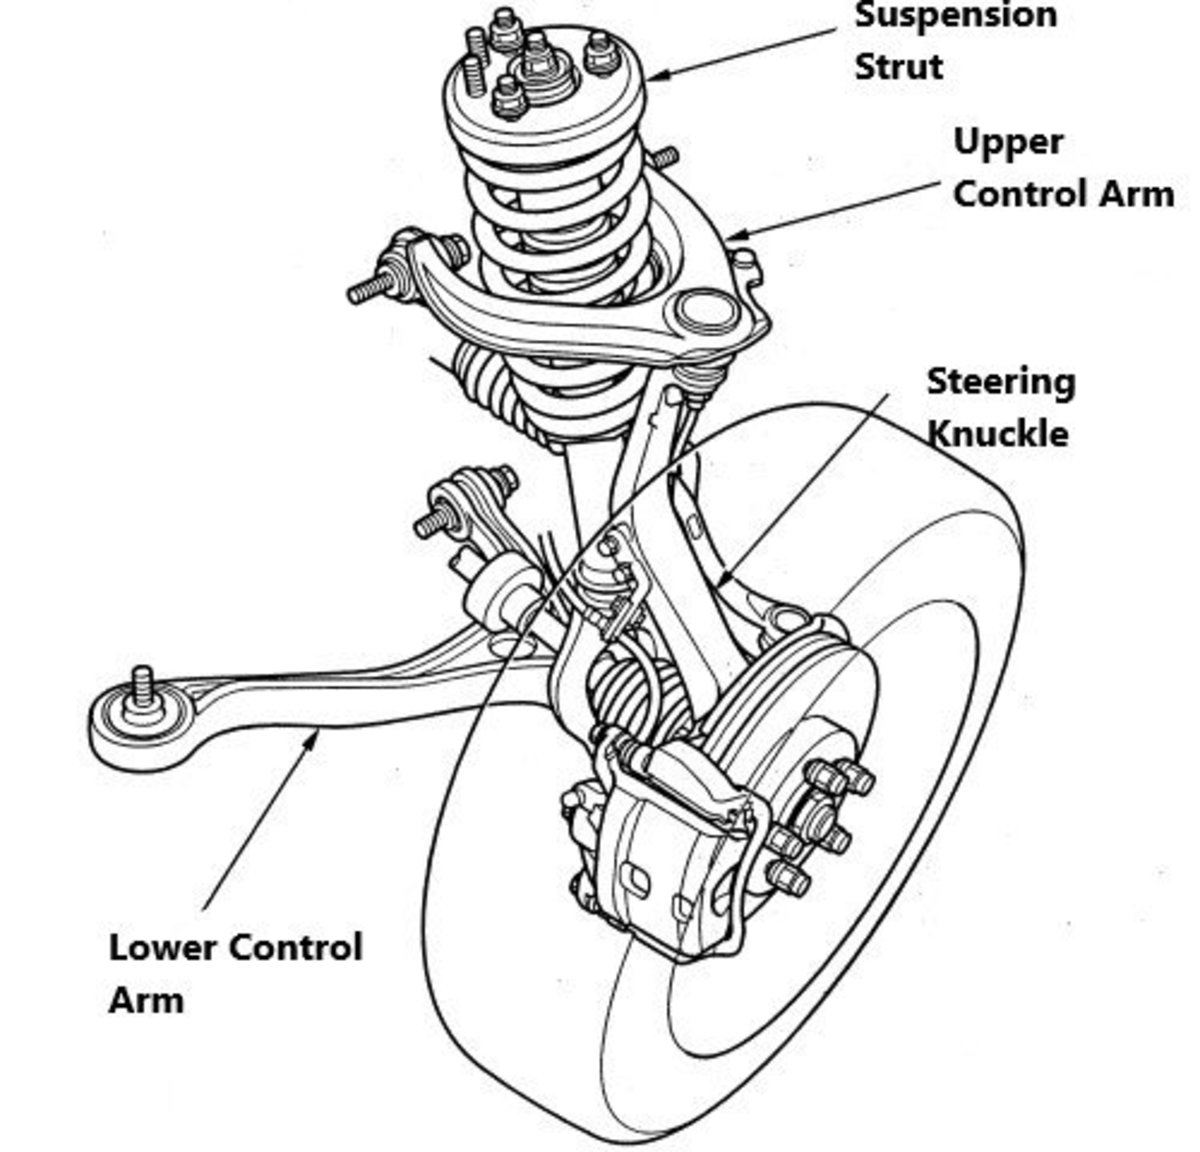 Honda Accord Front Suspension Diagram - dReferenz Blog